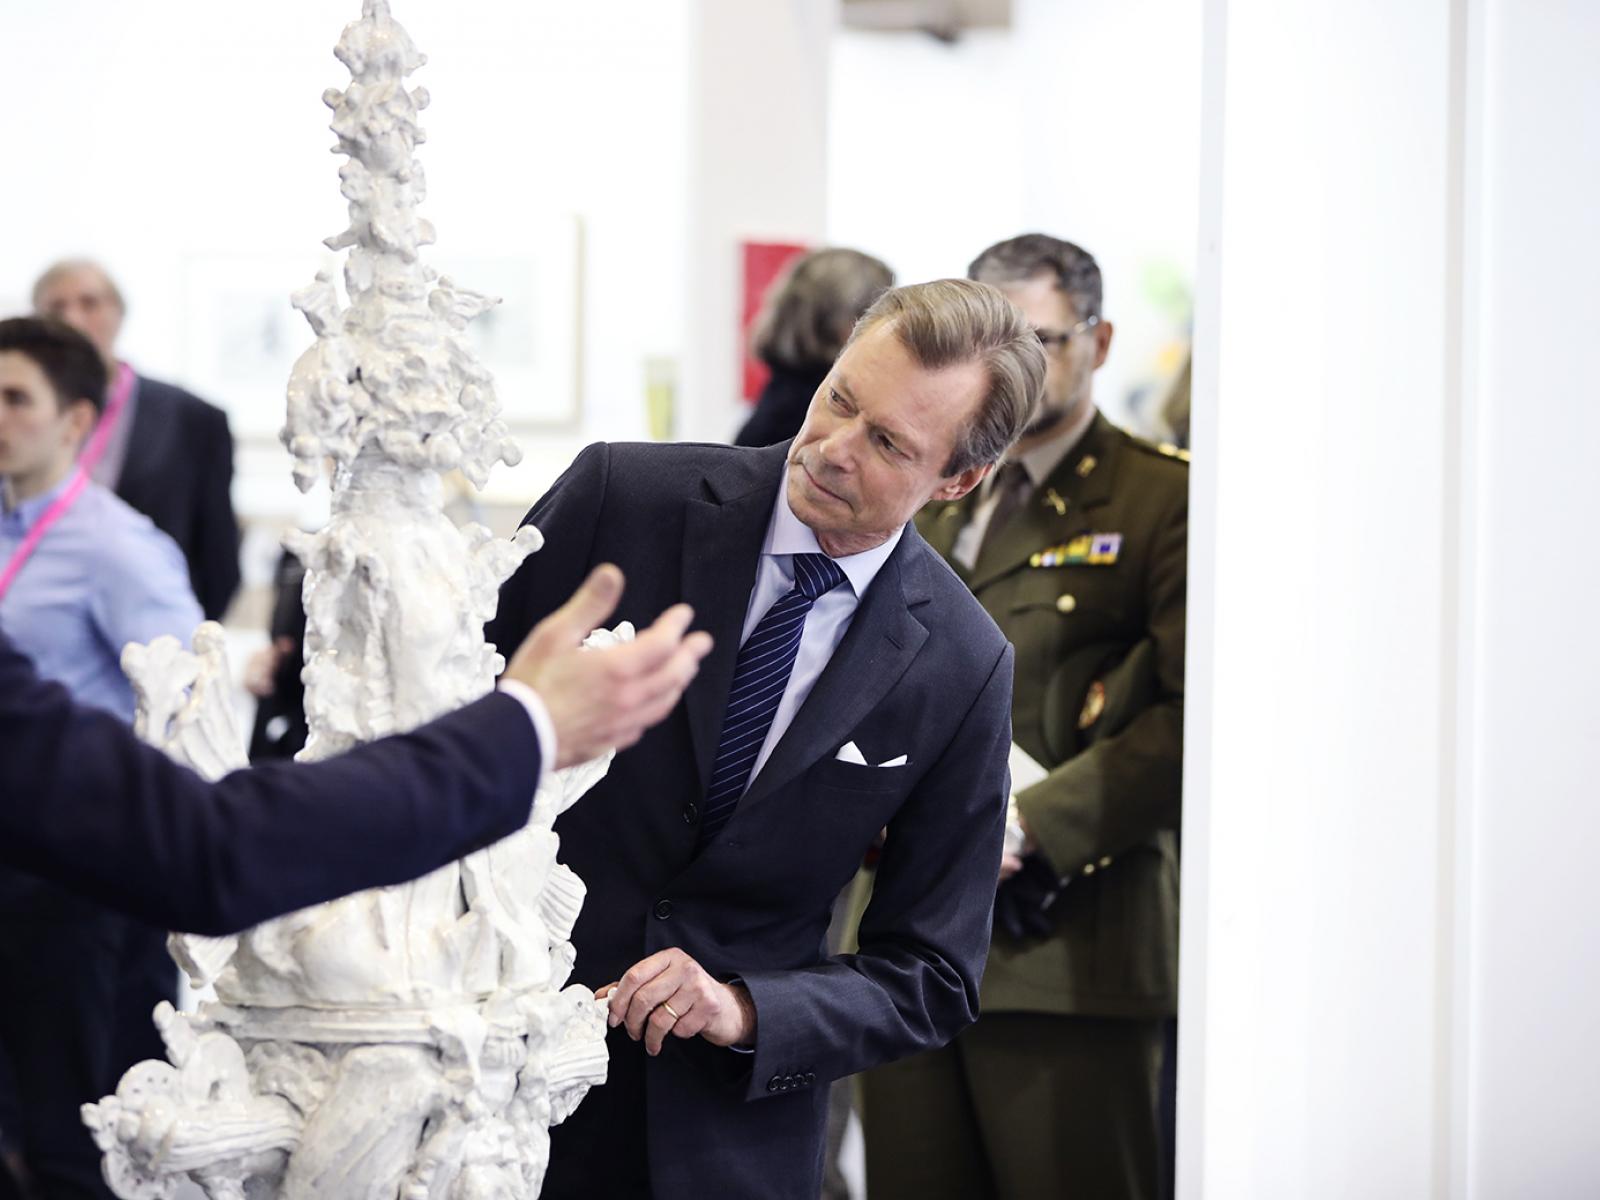 The Grand Duke admires a work of art